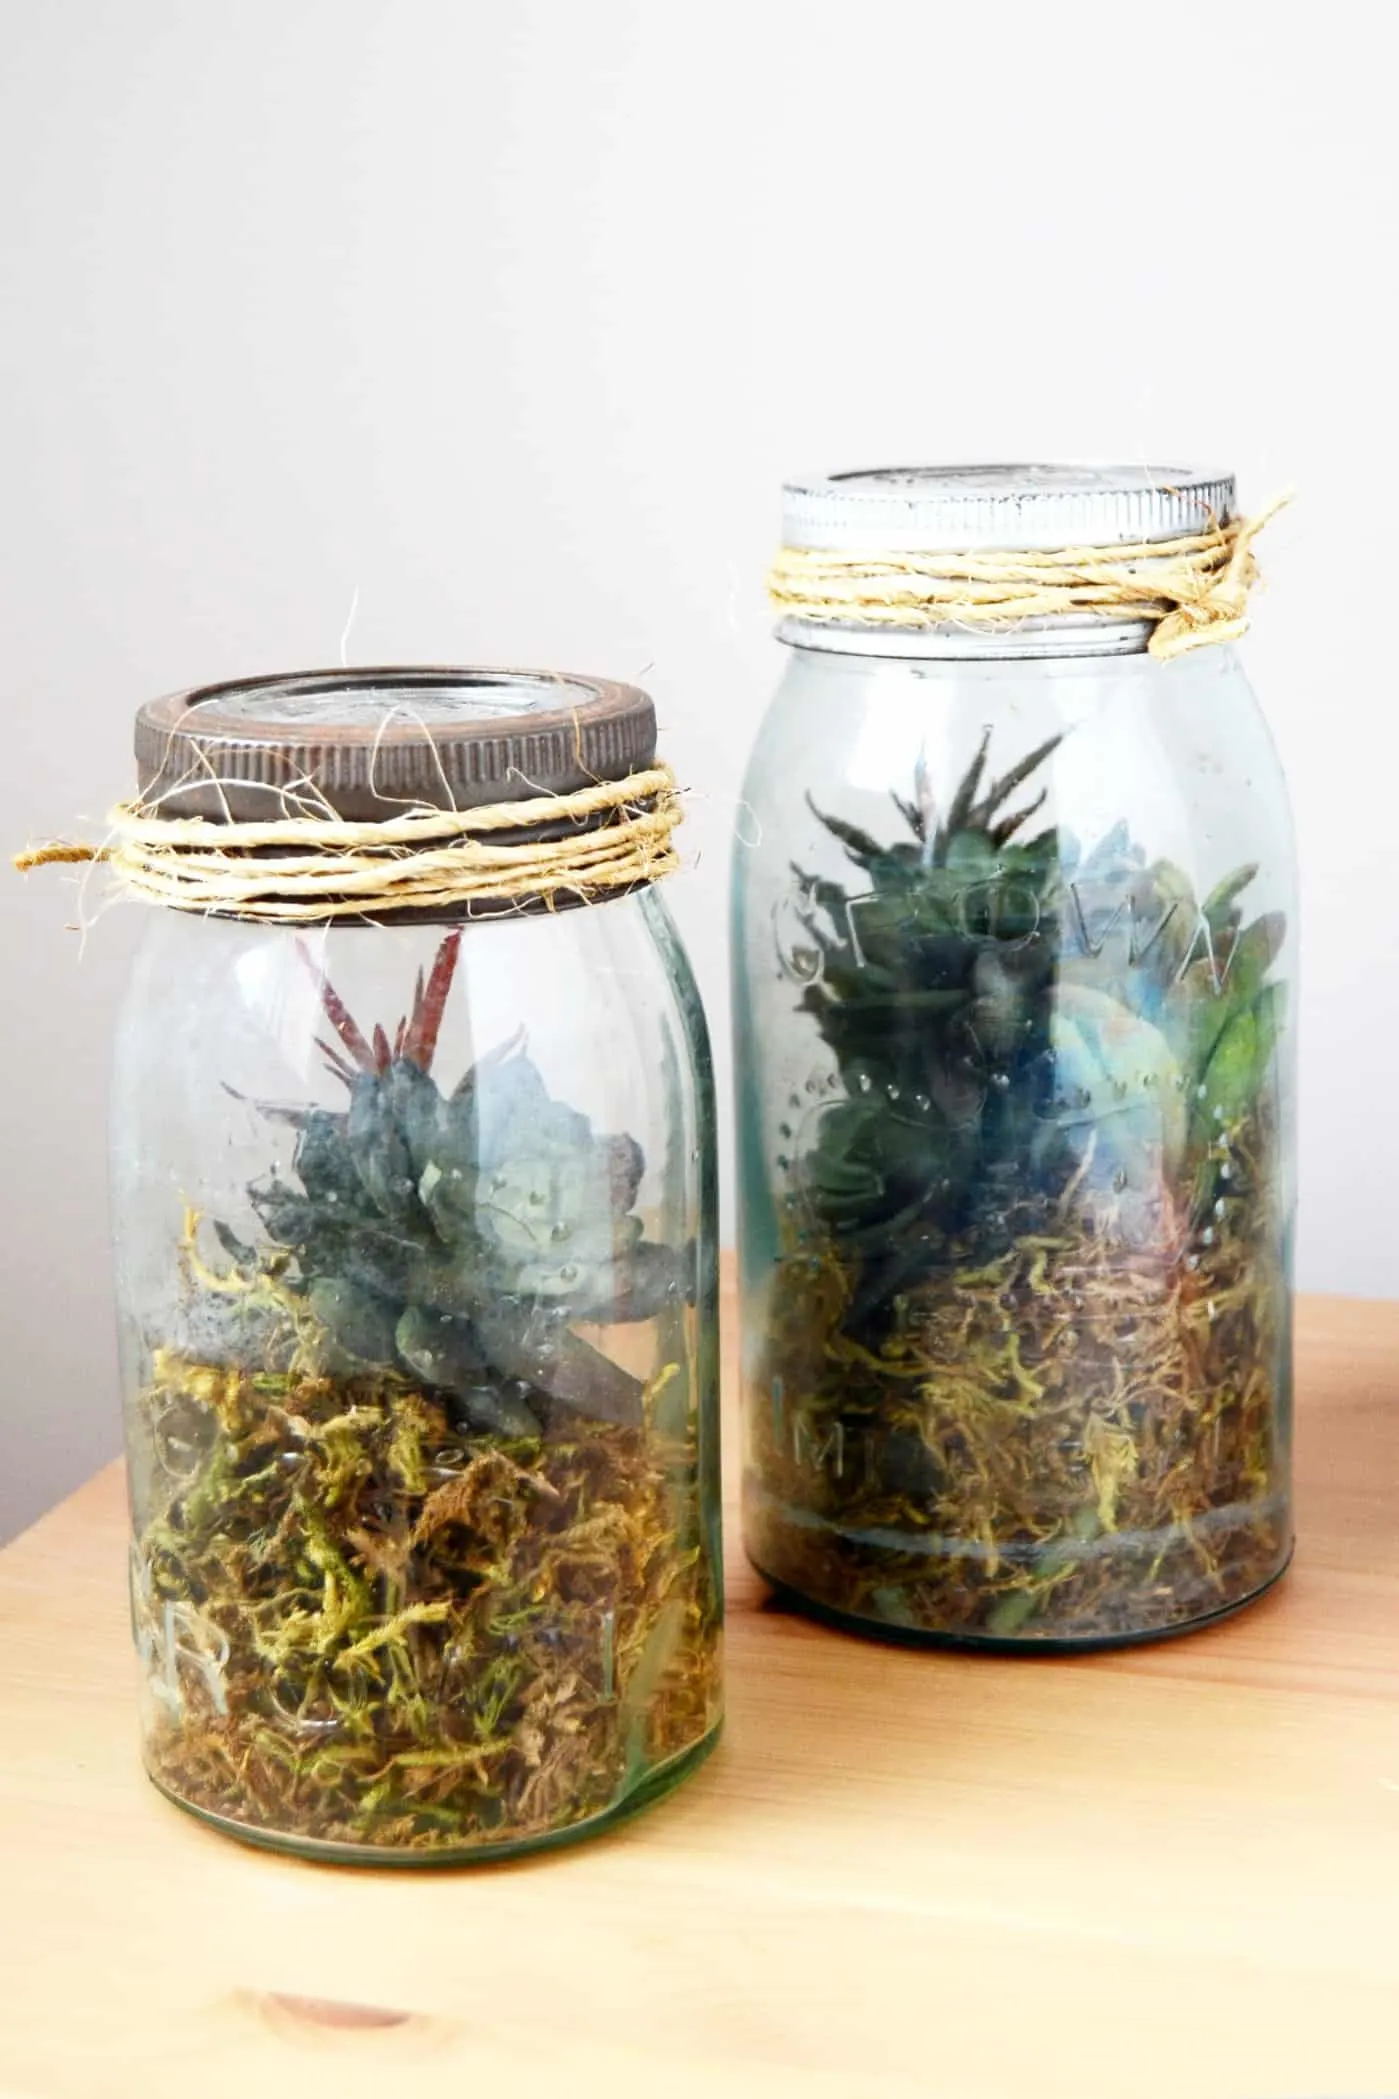 How to make a fake terrarium in a jar